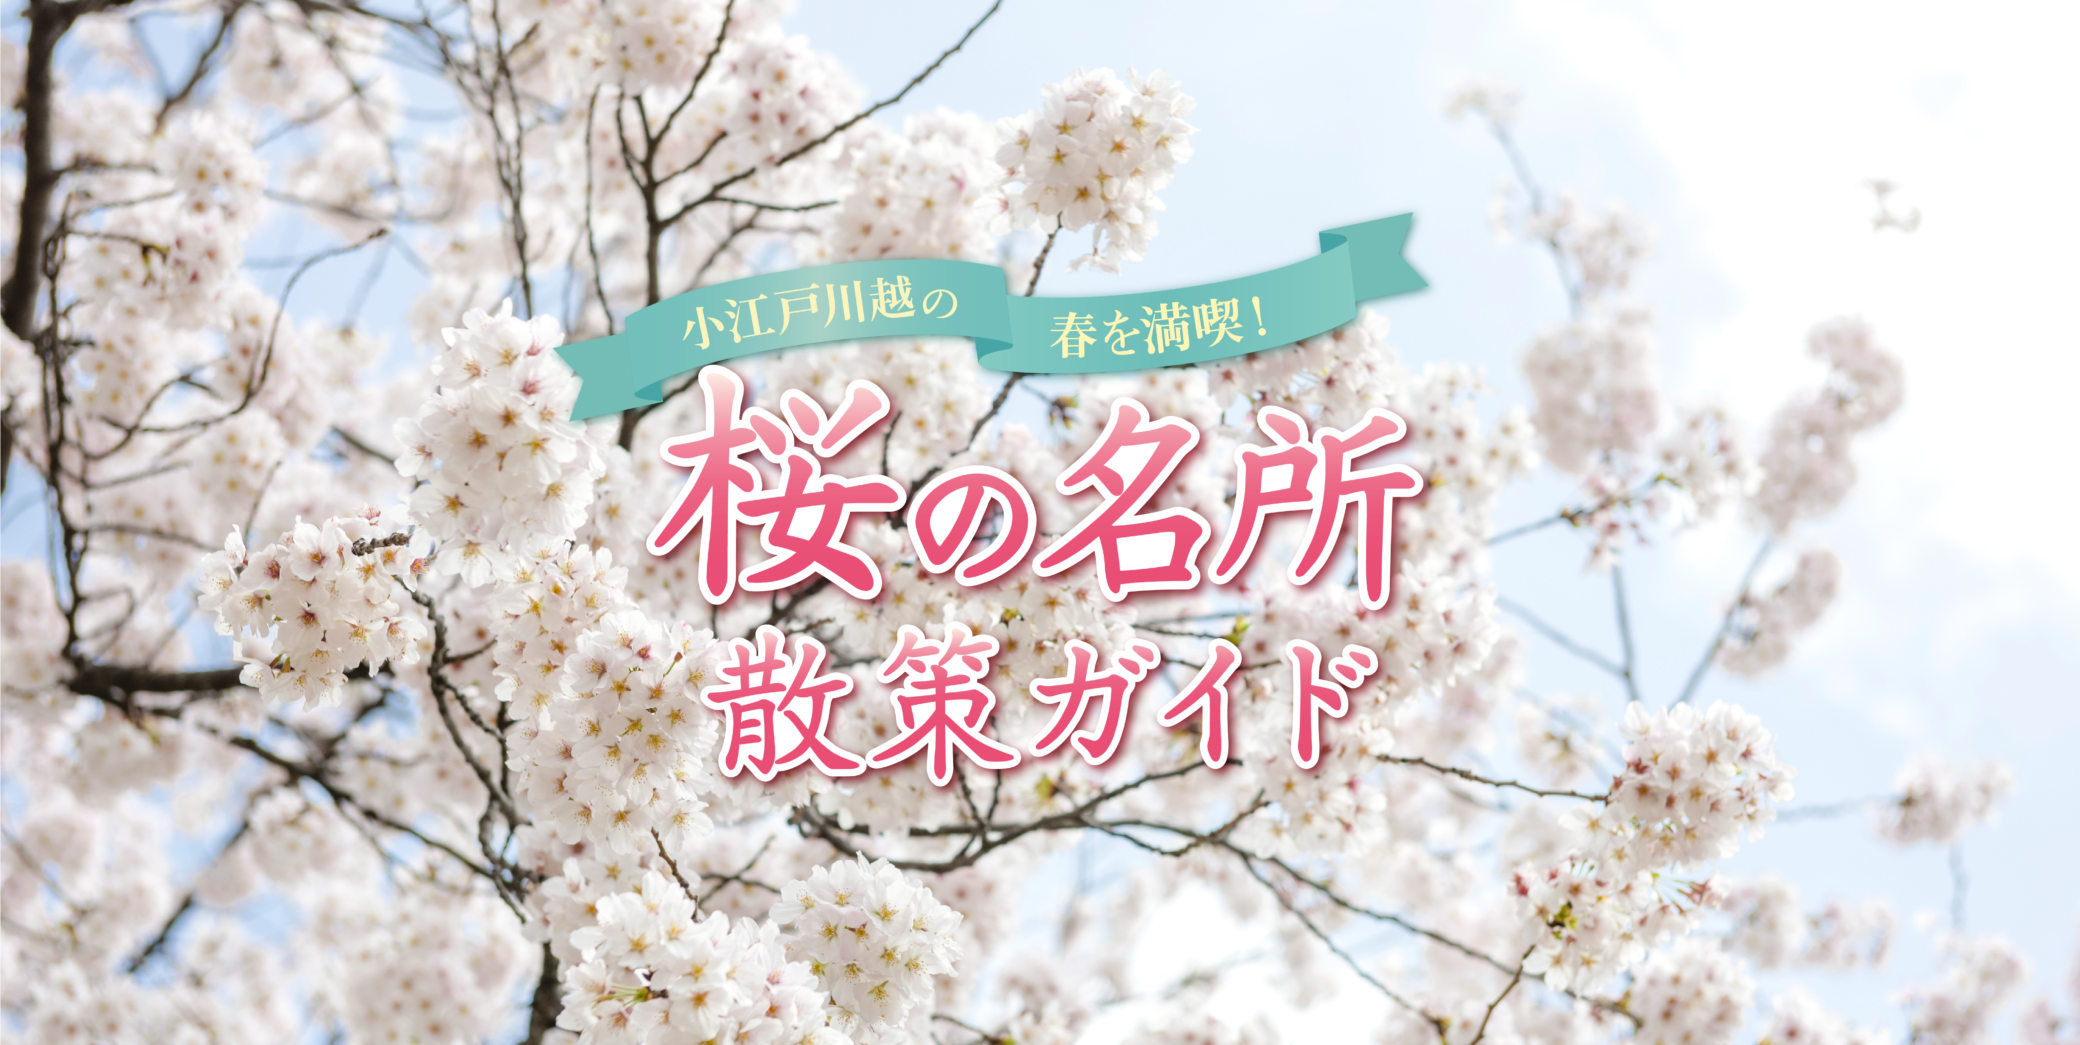 Profitez du printemps à Koedo Kawagoe !Guide d'observation des fleurs de cerisier